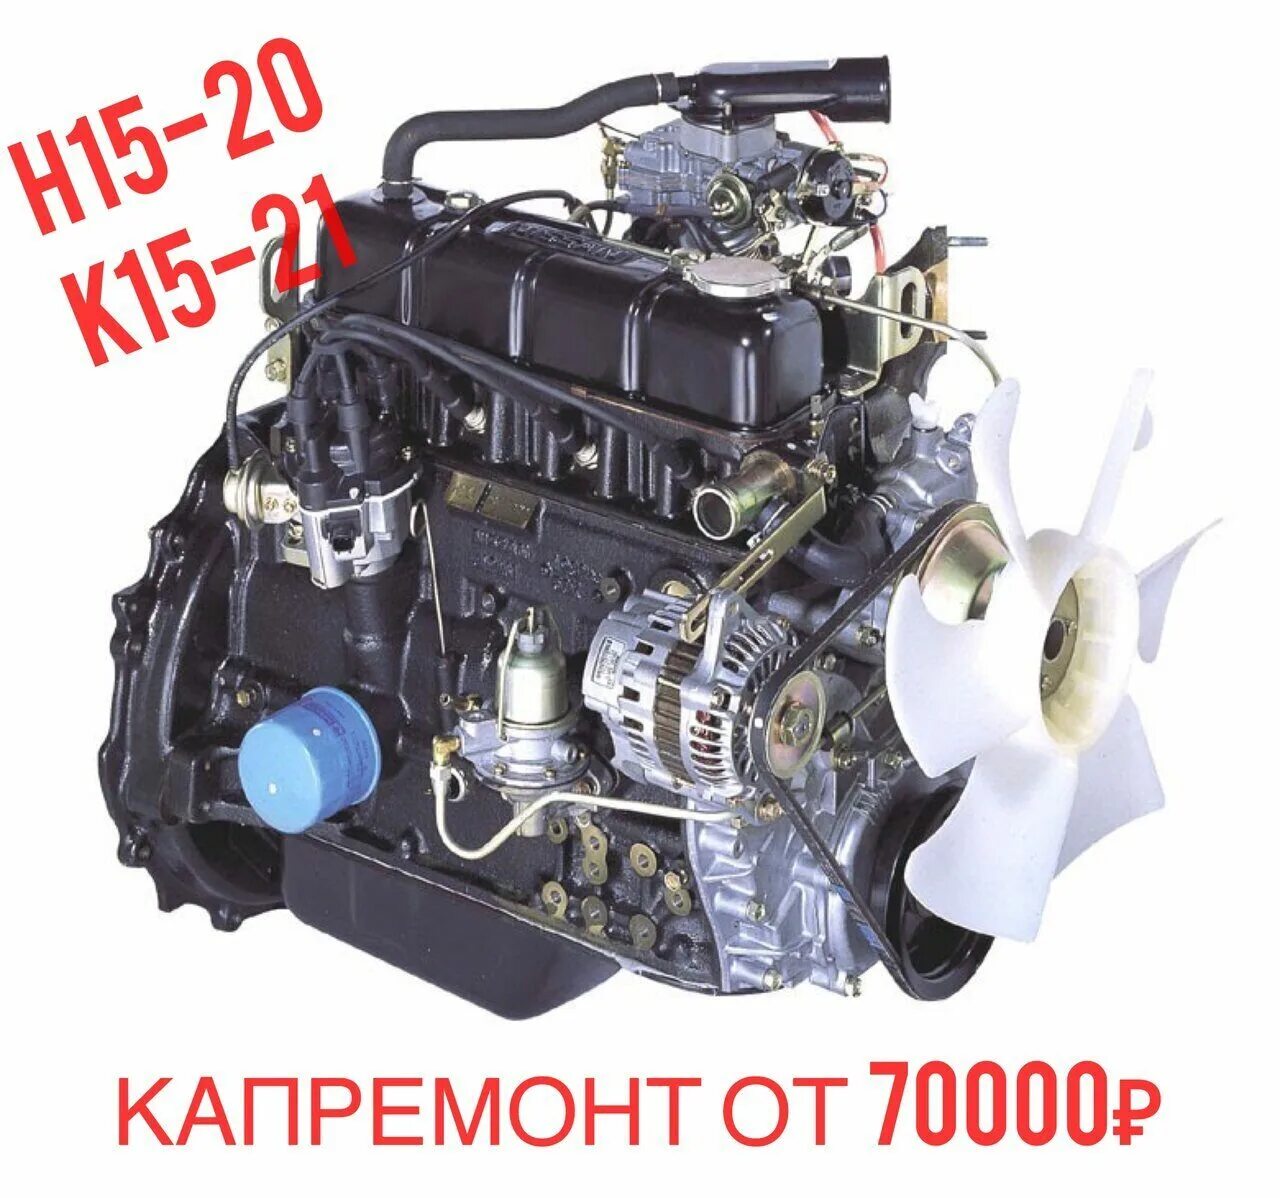 Купить дизельный двигатель 1. Двигатель h20 Nissan. Nissan k15 двигатель. Двигатель Nissan k15 для вилочного погрузчика. Двигатель Ниссан н20 погрузчик.